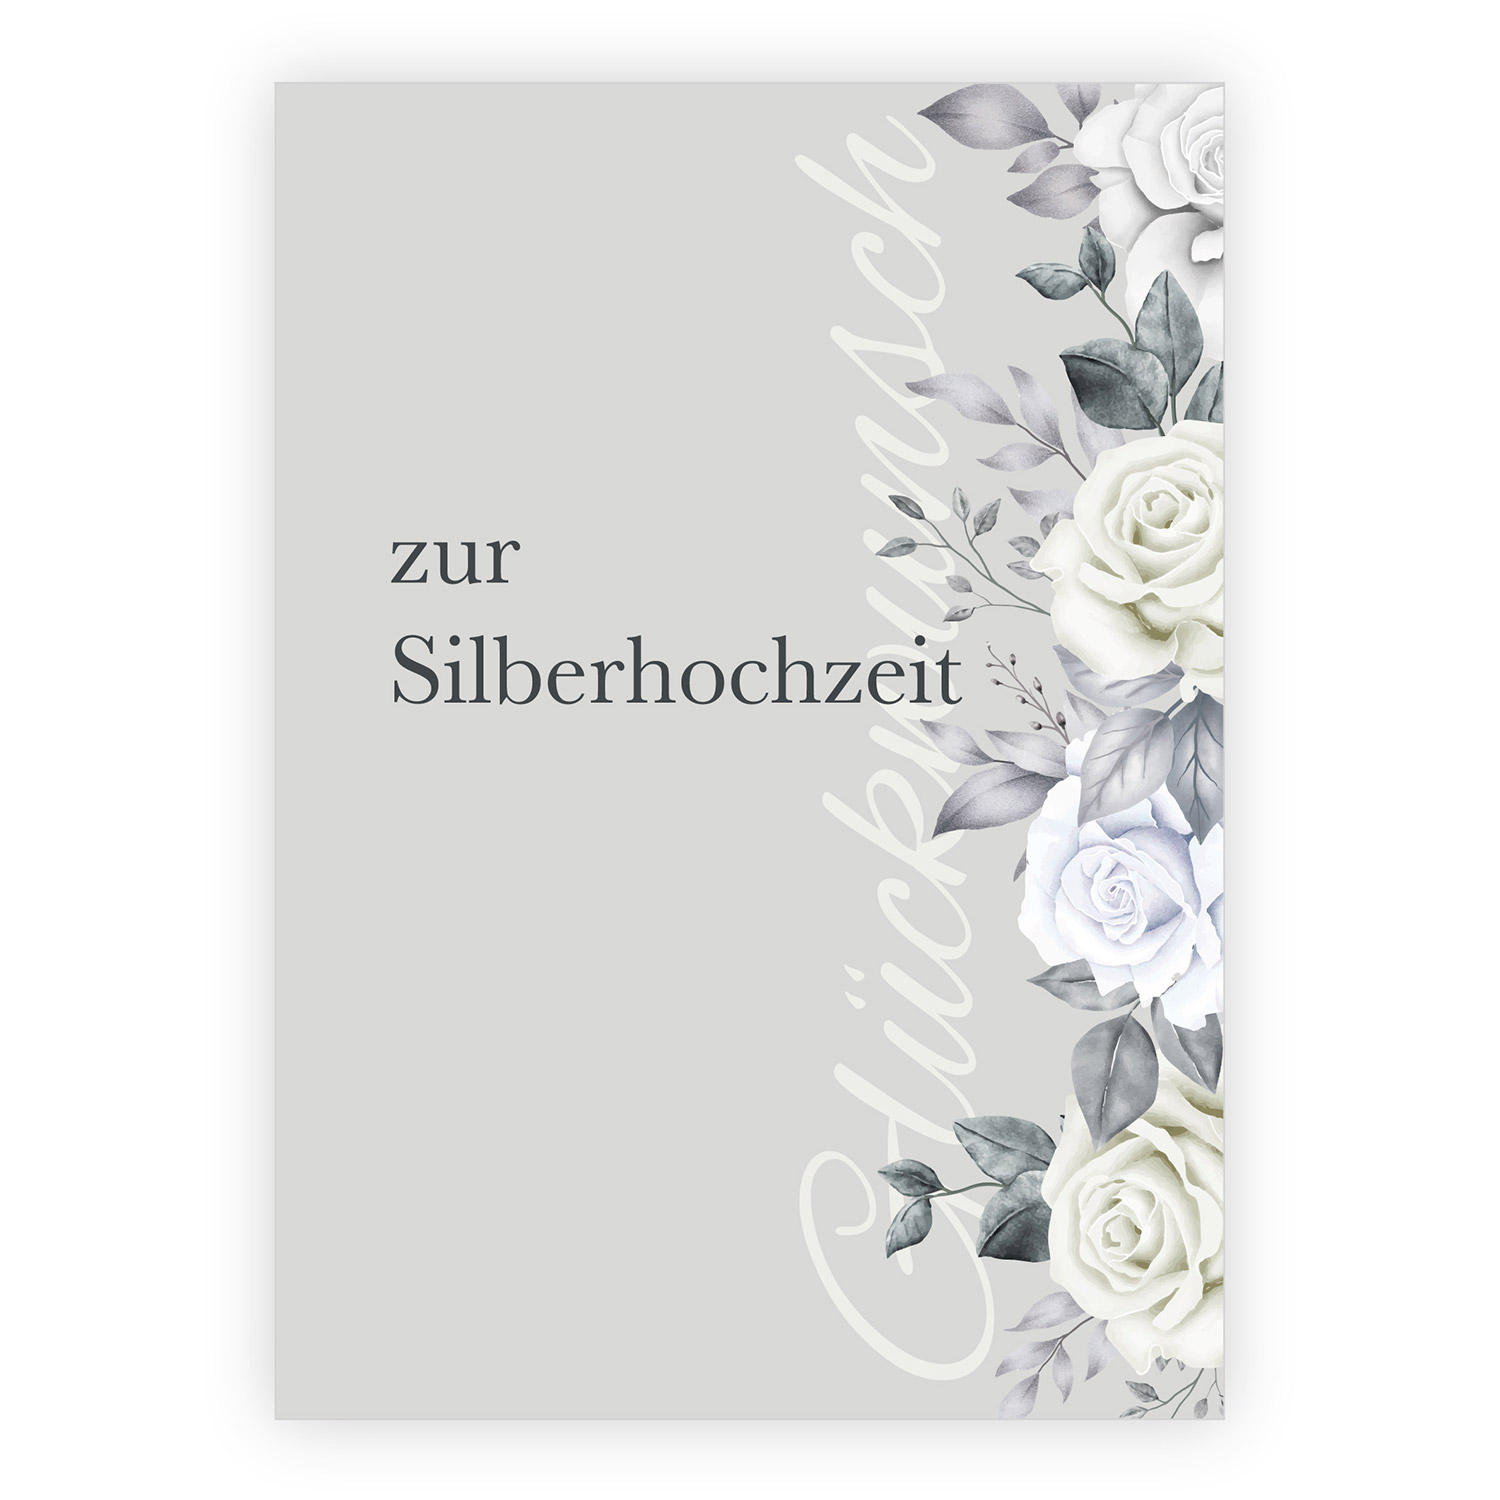 Feine Rosen Glückwunsch Grußkarte zur  Silberhochzeit 1 nachhaltig produzierte Klappkarte inklusive Umschlag made in  germany von Kartenkaufrausch.de